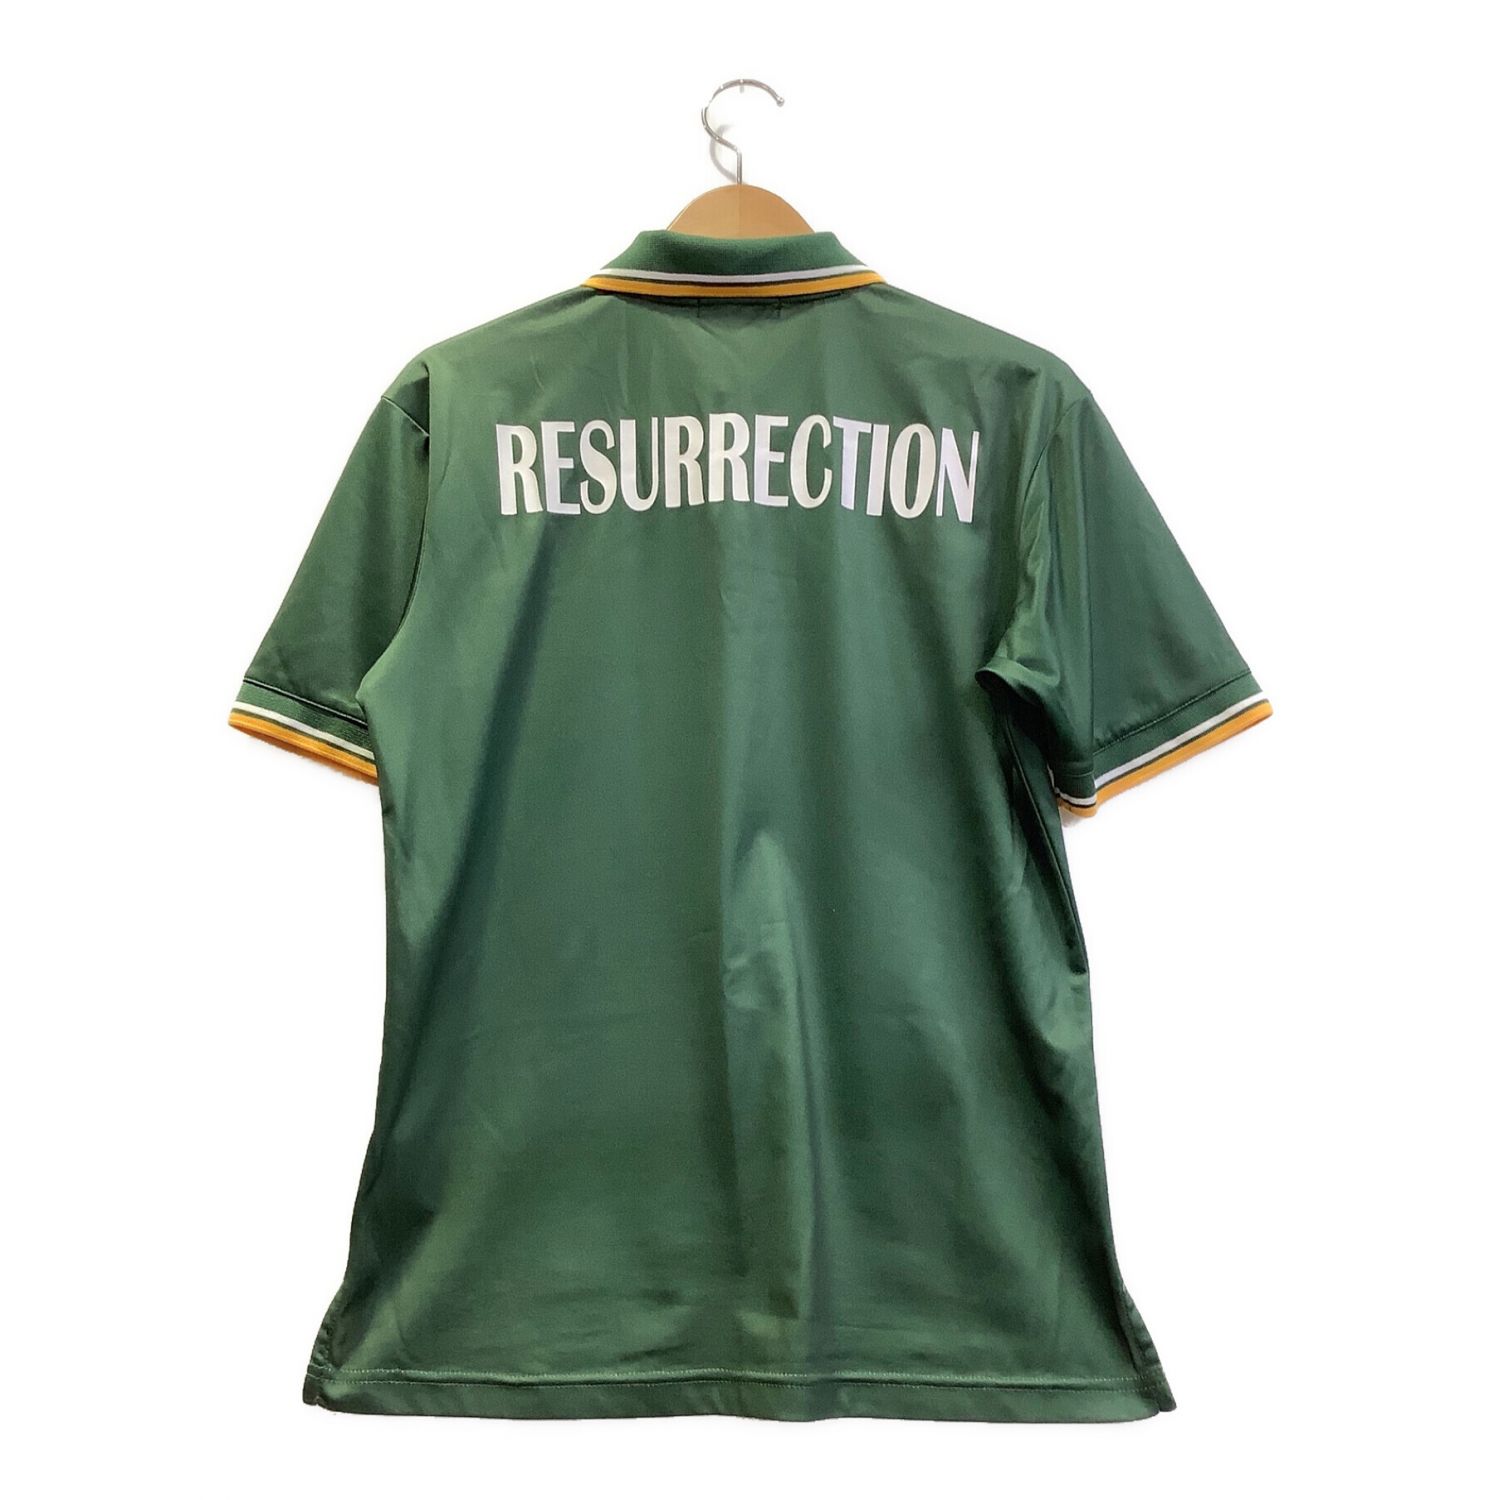 Resurrection (レザレクション) ゴルフウェア(トップス) メンズ SIZE M グリーン×イエロー 21SS ポロシャツ｜トレフ